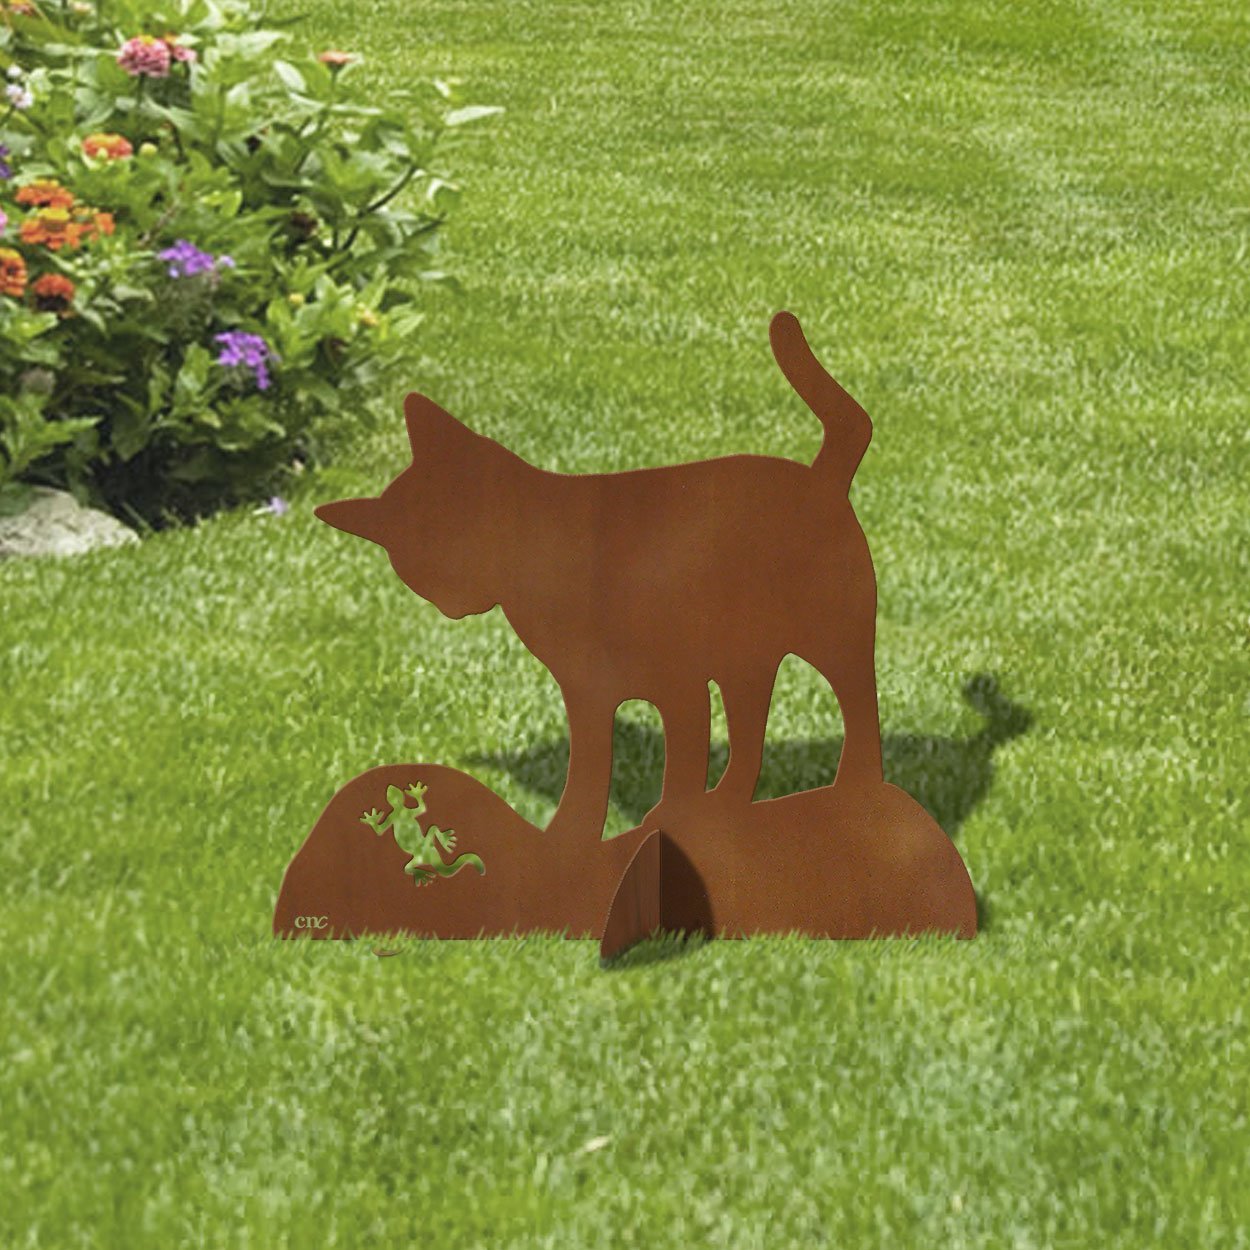 603057 - 24in W Cat And Lizard Metal Garden Statue Yard Art